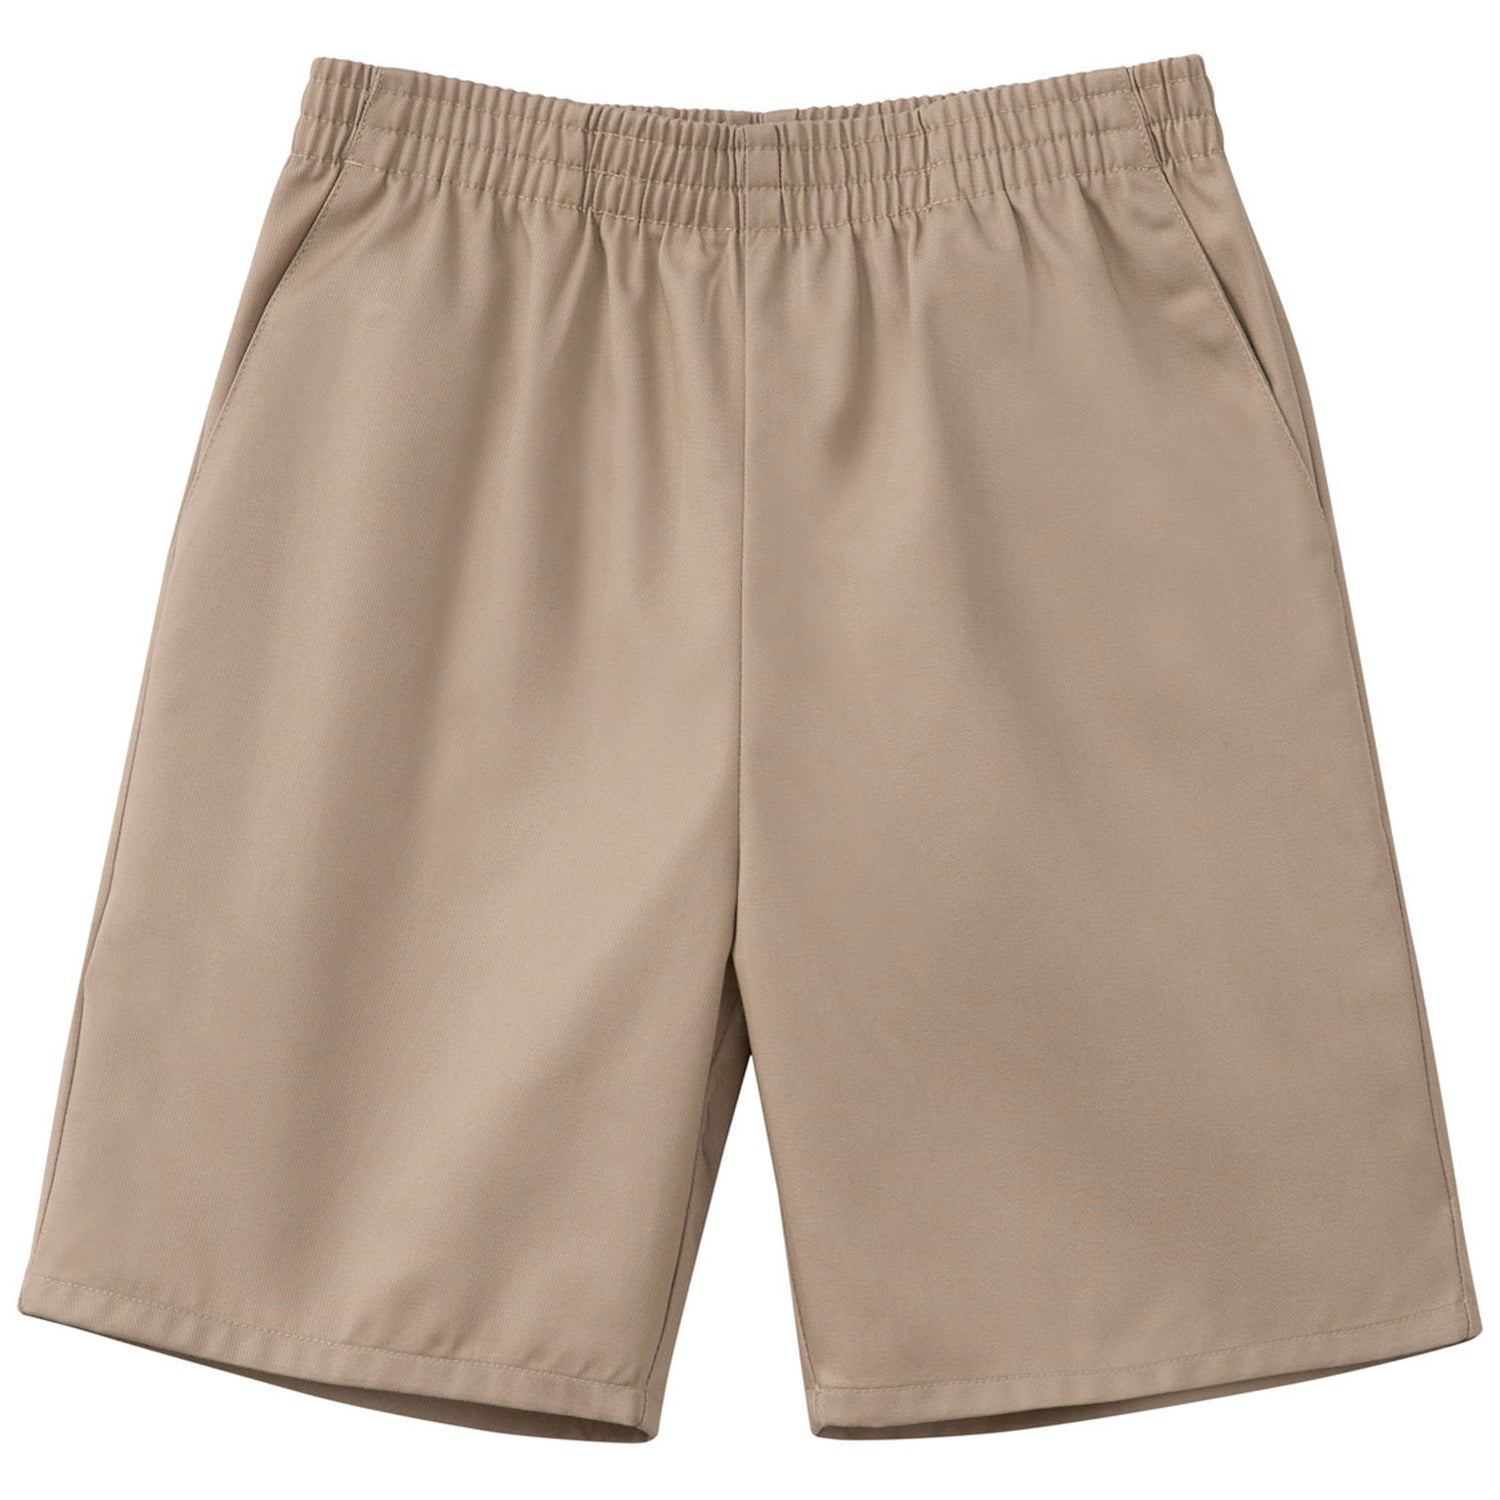 Elementary Unisex Shorts/Pants